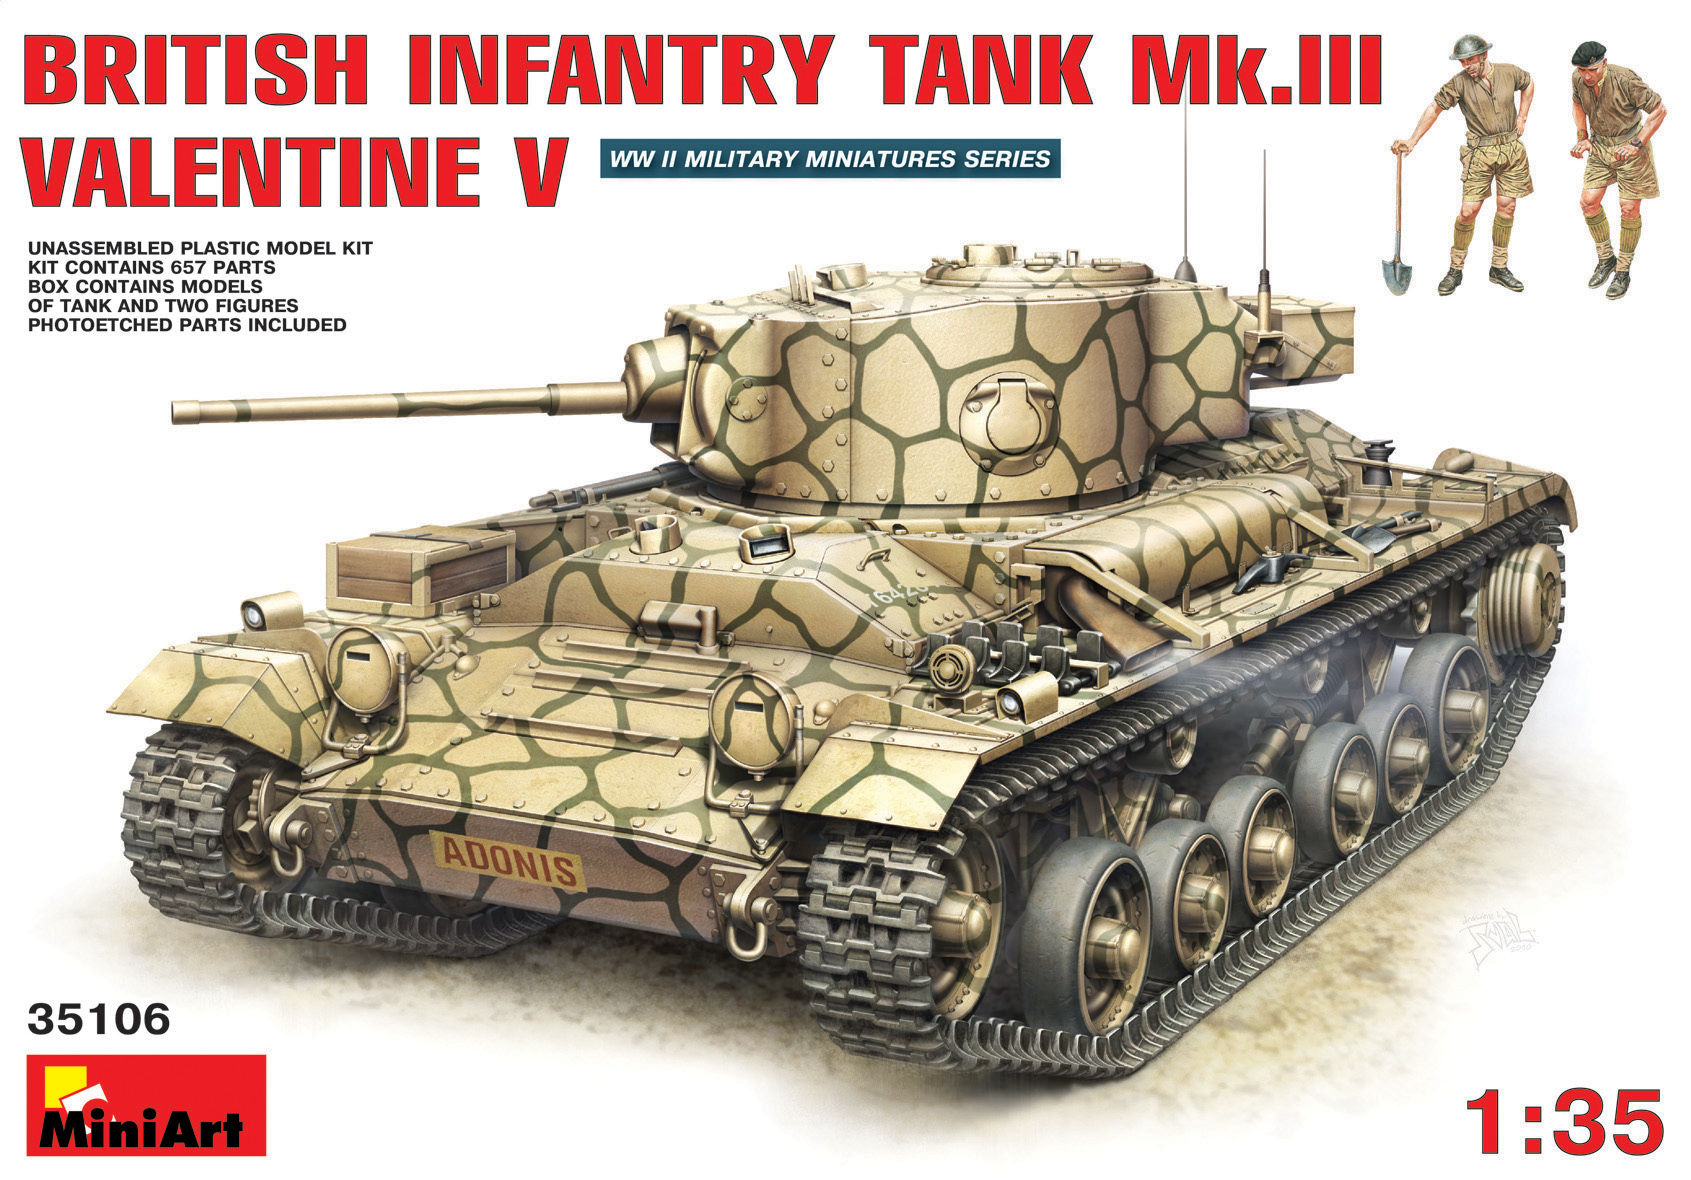 1/35 BRITISH INFANTRY TANK MK III VALENTINE V